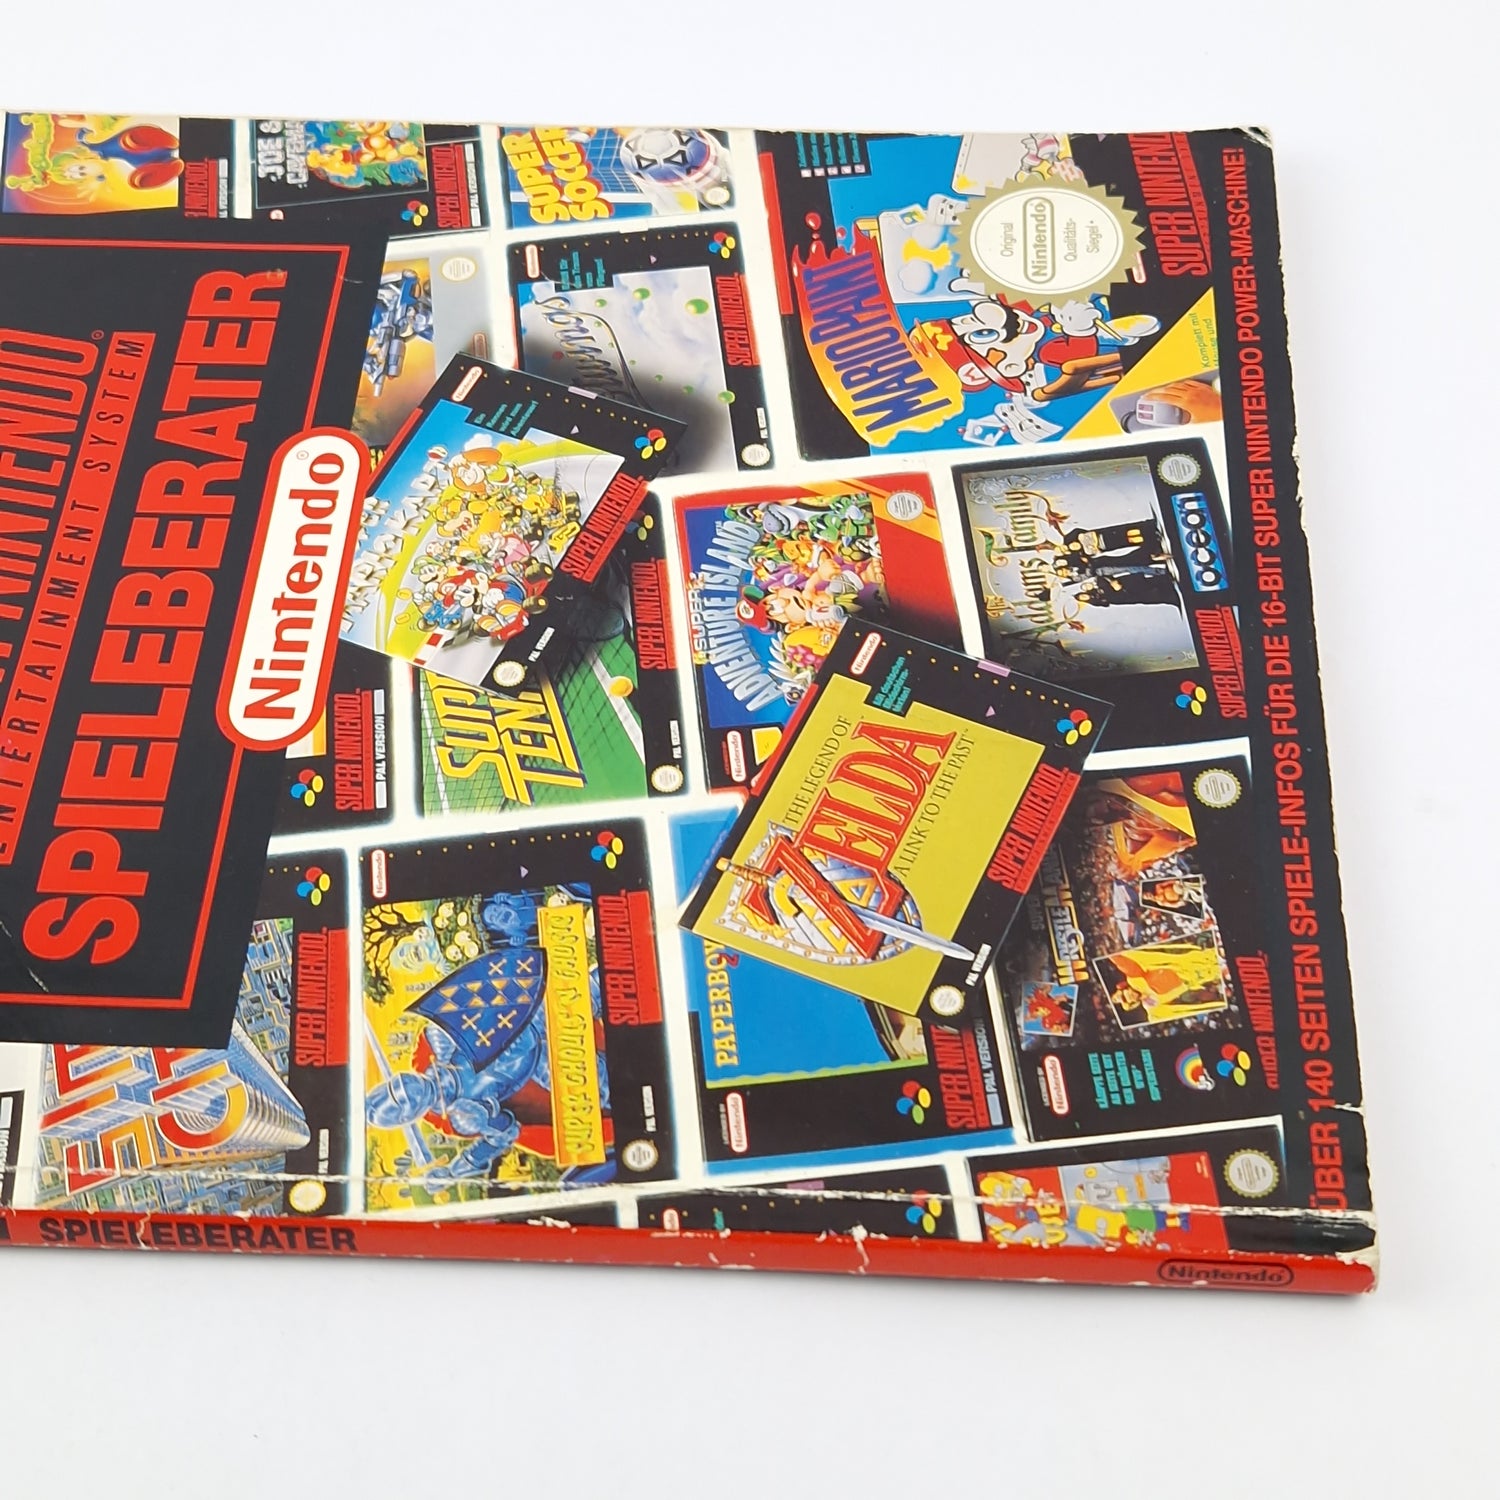 The Official Super Nintendo Game Advisor - SNES Solution Book Guide Book